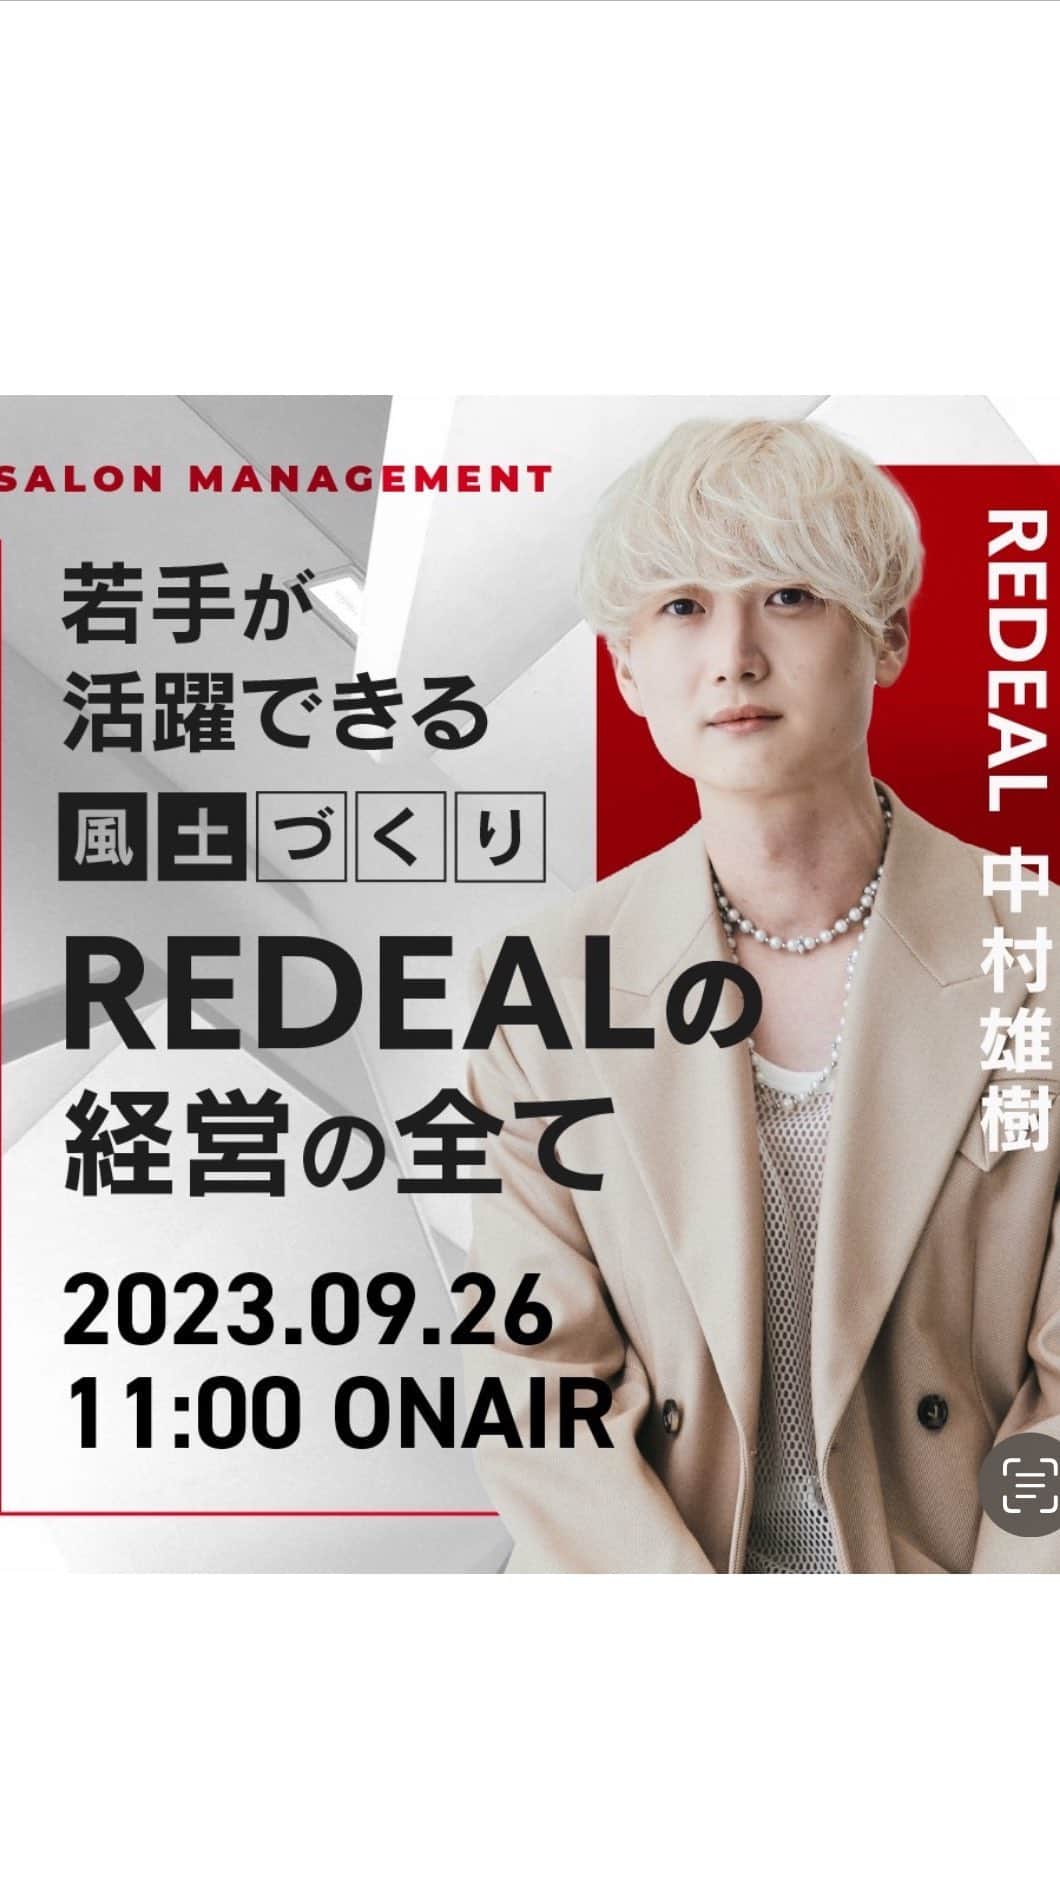 中村雄樹のインスタグラム：「. 若手が活躍できる風土作り 『REDEALの経営の全て』 . @haircamp.jp  . REDEAL祭り締めは僕の経営セミナーです☺️💪 皆様ご覧ください🙇‍♂️🔥 . . . . . .  . @redeal_hair  .  ⚪️#ディスコネレイヤーカット ⚪️ . "繋げていない" レイヤーカットを称して ディスコネレイヤーカットと名付けました。  近年ショートスタイルでは定番化していたディスコネ。これをボブ〜ロングに生かしたカットデザインです。 . REDEALではブリーチカラーのお客様も多いのですが、 レイヤーは入れすぎるとハイトーンは特に "中間がパサつく"ので傷んで見えます。 ですがこのレイヤーカットはそれがないです。 . . "繋げてない"からこそのメリットを大きく5つに分けると . ⚪️軽くなり過ぎずに"巻きやすい毛束"を作れる ⚪️"中間がパサつかない"ので傷んで見えない ⚪️全体の"重さ"は残るのでスカスカしない ⚪️繋げないところがあるため工程が少なくカット時間も短い ⚪️後ろにはレイヤーが少ないので寝癖になり辛い . . REDEAL考案の "ディスコネレイヤーカット" 鏡越しの毎朝が楽しみになります。  . . . 🔍REDEAL SHIBUYAのカラーの"こだわり" . こちらにupさせて頂いてるスタイルは基本 "1ブリーチ"での仕上がりが多いです。 理由として、 . . 🔍低温ブリーチでの施術 :当日の施術時間は熱を出さないためにじわじわブリーチ致します . 🔍業界最高峰のカラー剤を導入 :wellaの最新カラー剤KPプラスを使用しております（茶色が入ってない薬剤使うので難易度は高いのですが明るくて透けます） @wellapro_japan . 🔍入念に行う"カウンセリング" 現在の状態と"なりたいイメージ像"の可能かどうかも含めてか擦り合わせてなるべく1ブリーチで理想の仕上がりになる計画を一緒に立てます。 . . . .  . . . . . . . 🟡ご新規のご予約方法🟡 基本はREDEAL SHIBUYA のホットペッパーかお電話よりご予約ください。 . 🟥ホットペッパー （アプリ又はGoogleで大宮REDEAL SHIBUYAで検索） 🟨 📞 03 6416 9152 . ※基本的に営業時間以外もご予約できるのとポイント付くのでホットペッパーを推奨しております . 【お問い合わせ方法】 お電話のみとさせて頂きます。 🟨📞 03 6416 9152 . . . 🟡メニューの選び方🟡 .  【✂︎カット✂︎】 ⚪️ディスコネレイヤーカット 重さを残したレイヤースタイルをされたい方はこちらのメニューを選択してください。 ⚪️トリミングカット 乾いた状態でカットが完結するレベルの毛量調整や毛先の調整の方はこちらがおすすめです。 ⚪️デザインカット 上記２つ以外のショートやボブカット等々ご希望の方はこちらのメニューをお選びください。 . ※基本当日追加可能です✂︎ .  【🎨カラー🎨】 メニューがわからない場合 🔴ブリーチ有メニュー（4〜5時間前後） 🔵ブリーチ無メニュー（2時間前後） どちらかでご予約頂けましたらある程度お時間に限りはござまいすが当日変更等の対応はできますのでご安心ください。その日の気持ちをカウンセリングさせて頂き、ご提案をさせて頂きます  【🌿トリートメント🌿】 基本的に10分前後の施術になります。 事前のご予約、当日の変更も対応可能です。 . . ※施術料はその日の適切な金額をカウンセリングでお伝え致しますのでご安心ください ※ご予約状況でメニュー変更が難しい場合もございますので予めご了承ください . .  . . . REDEAL SHIBUYA . 東京都渋谷区宇田川町3-10 いちごフィエスタ渋谷3階  . 渋谷美容室 カミカリスマ "受賞"ヘアサロン . . . . . . . .  .  #レイヤースタイル #小顔カット #小顔ヘア #アッシュグレー #ワンカール  #中国ヘア #レイヤー #レイヤーカット #ワンホンヘア  #レイヤーカットロング  #ダークトーンカラー #ザクザクレイヤー #ウルフヘア #渋谷美容室 #東京美容室  #ミディアムレイヤー #後毛 #後毛カット #サイドバング #渋谷レイヤーカット  #ロングウルフ #フェイスレイヤー #姫カット #ミディアムウルフ #ウルフカット」